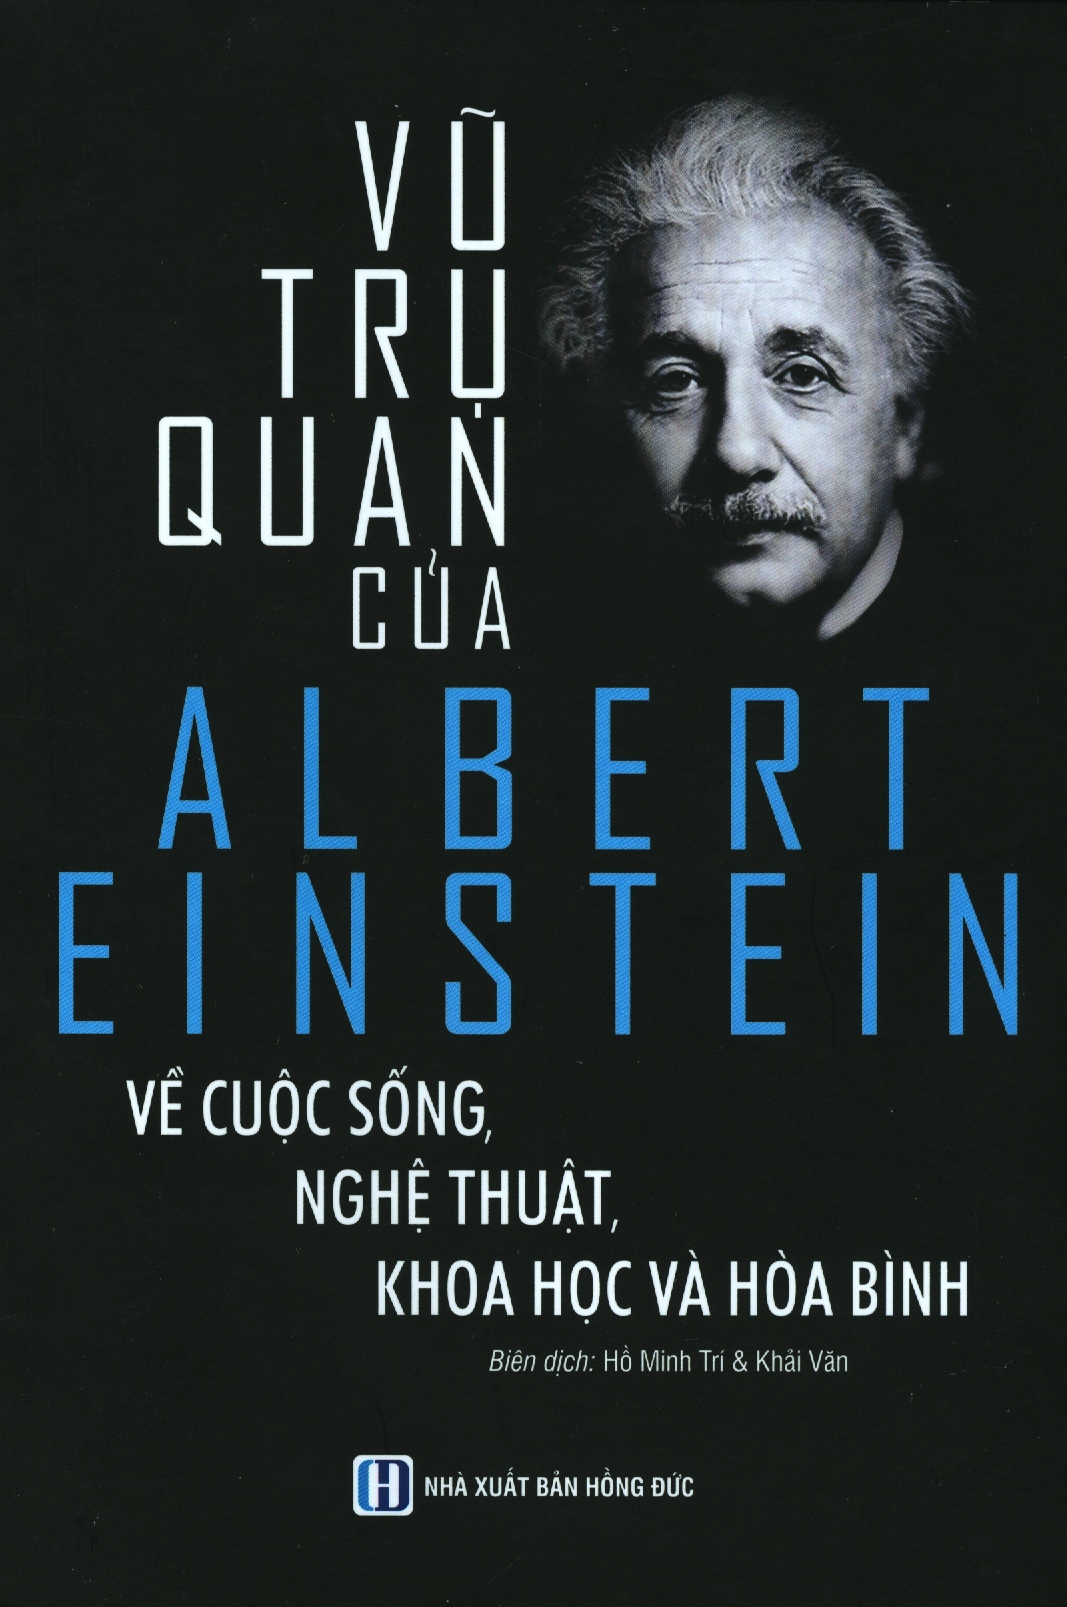 Vũ Trụ Quan Của Albert Einstein Về Cuộc Sống Nghệ Thuật, Khoa Học Và Hoà Bình _ĐN